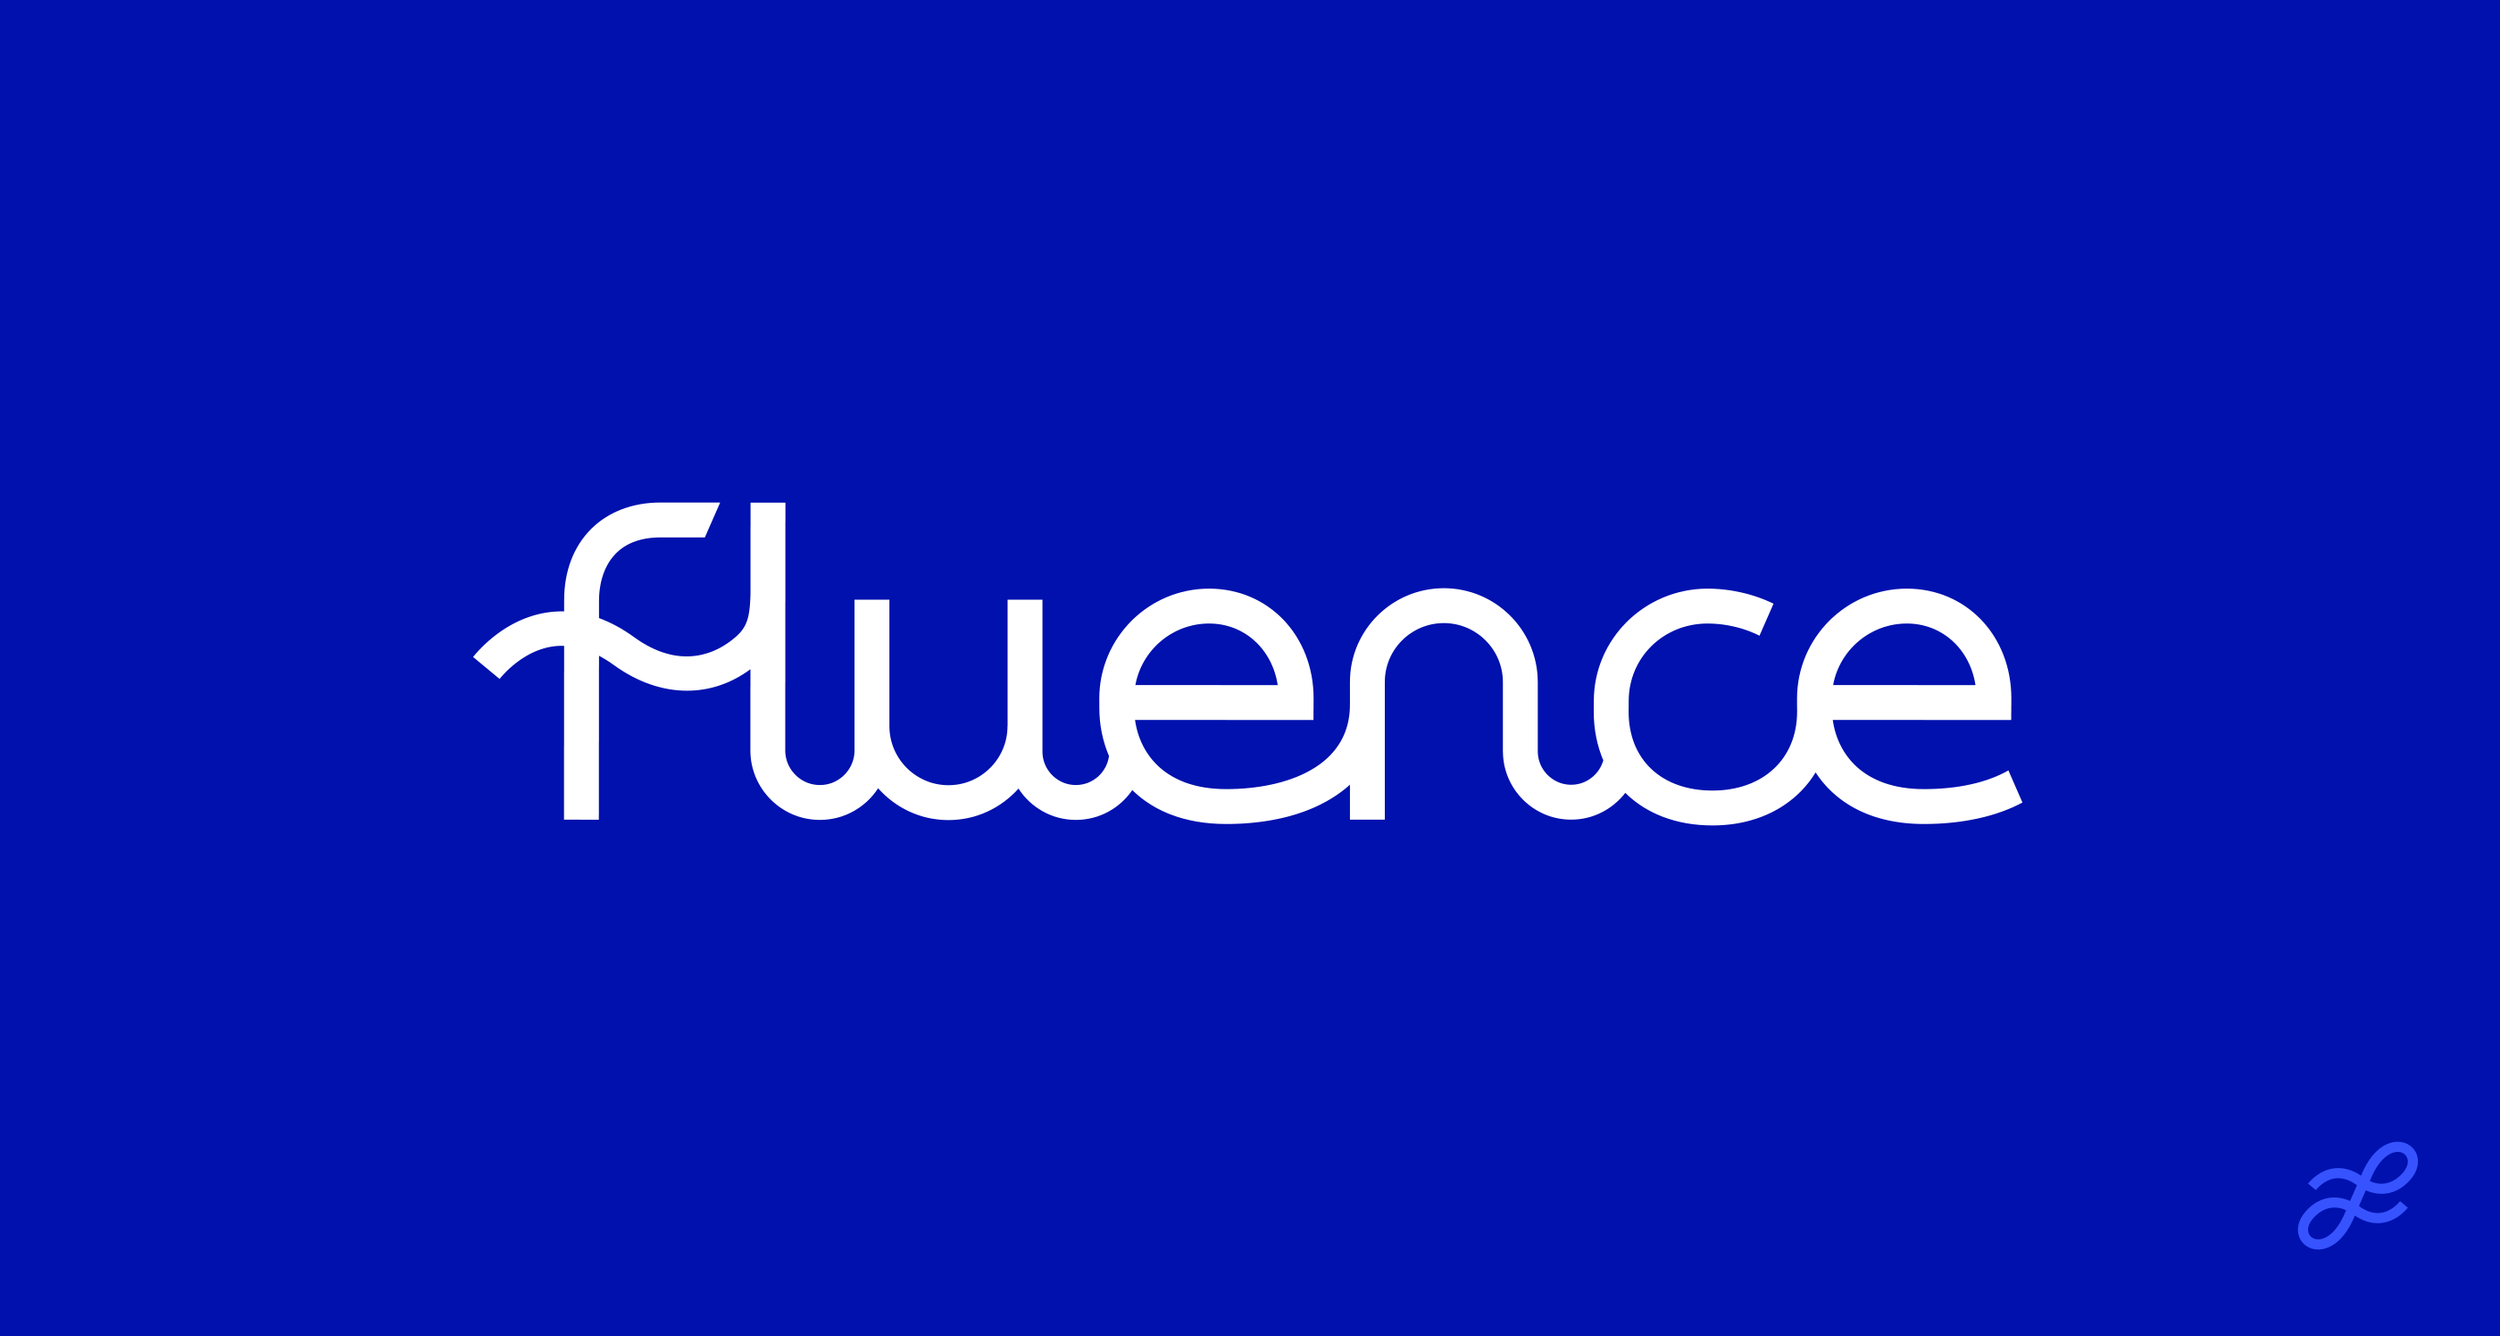 FLUENCE : Brand Short Description Type Here.